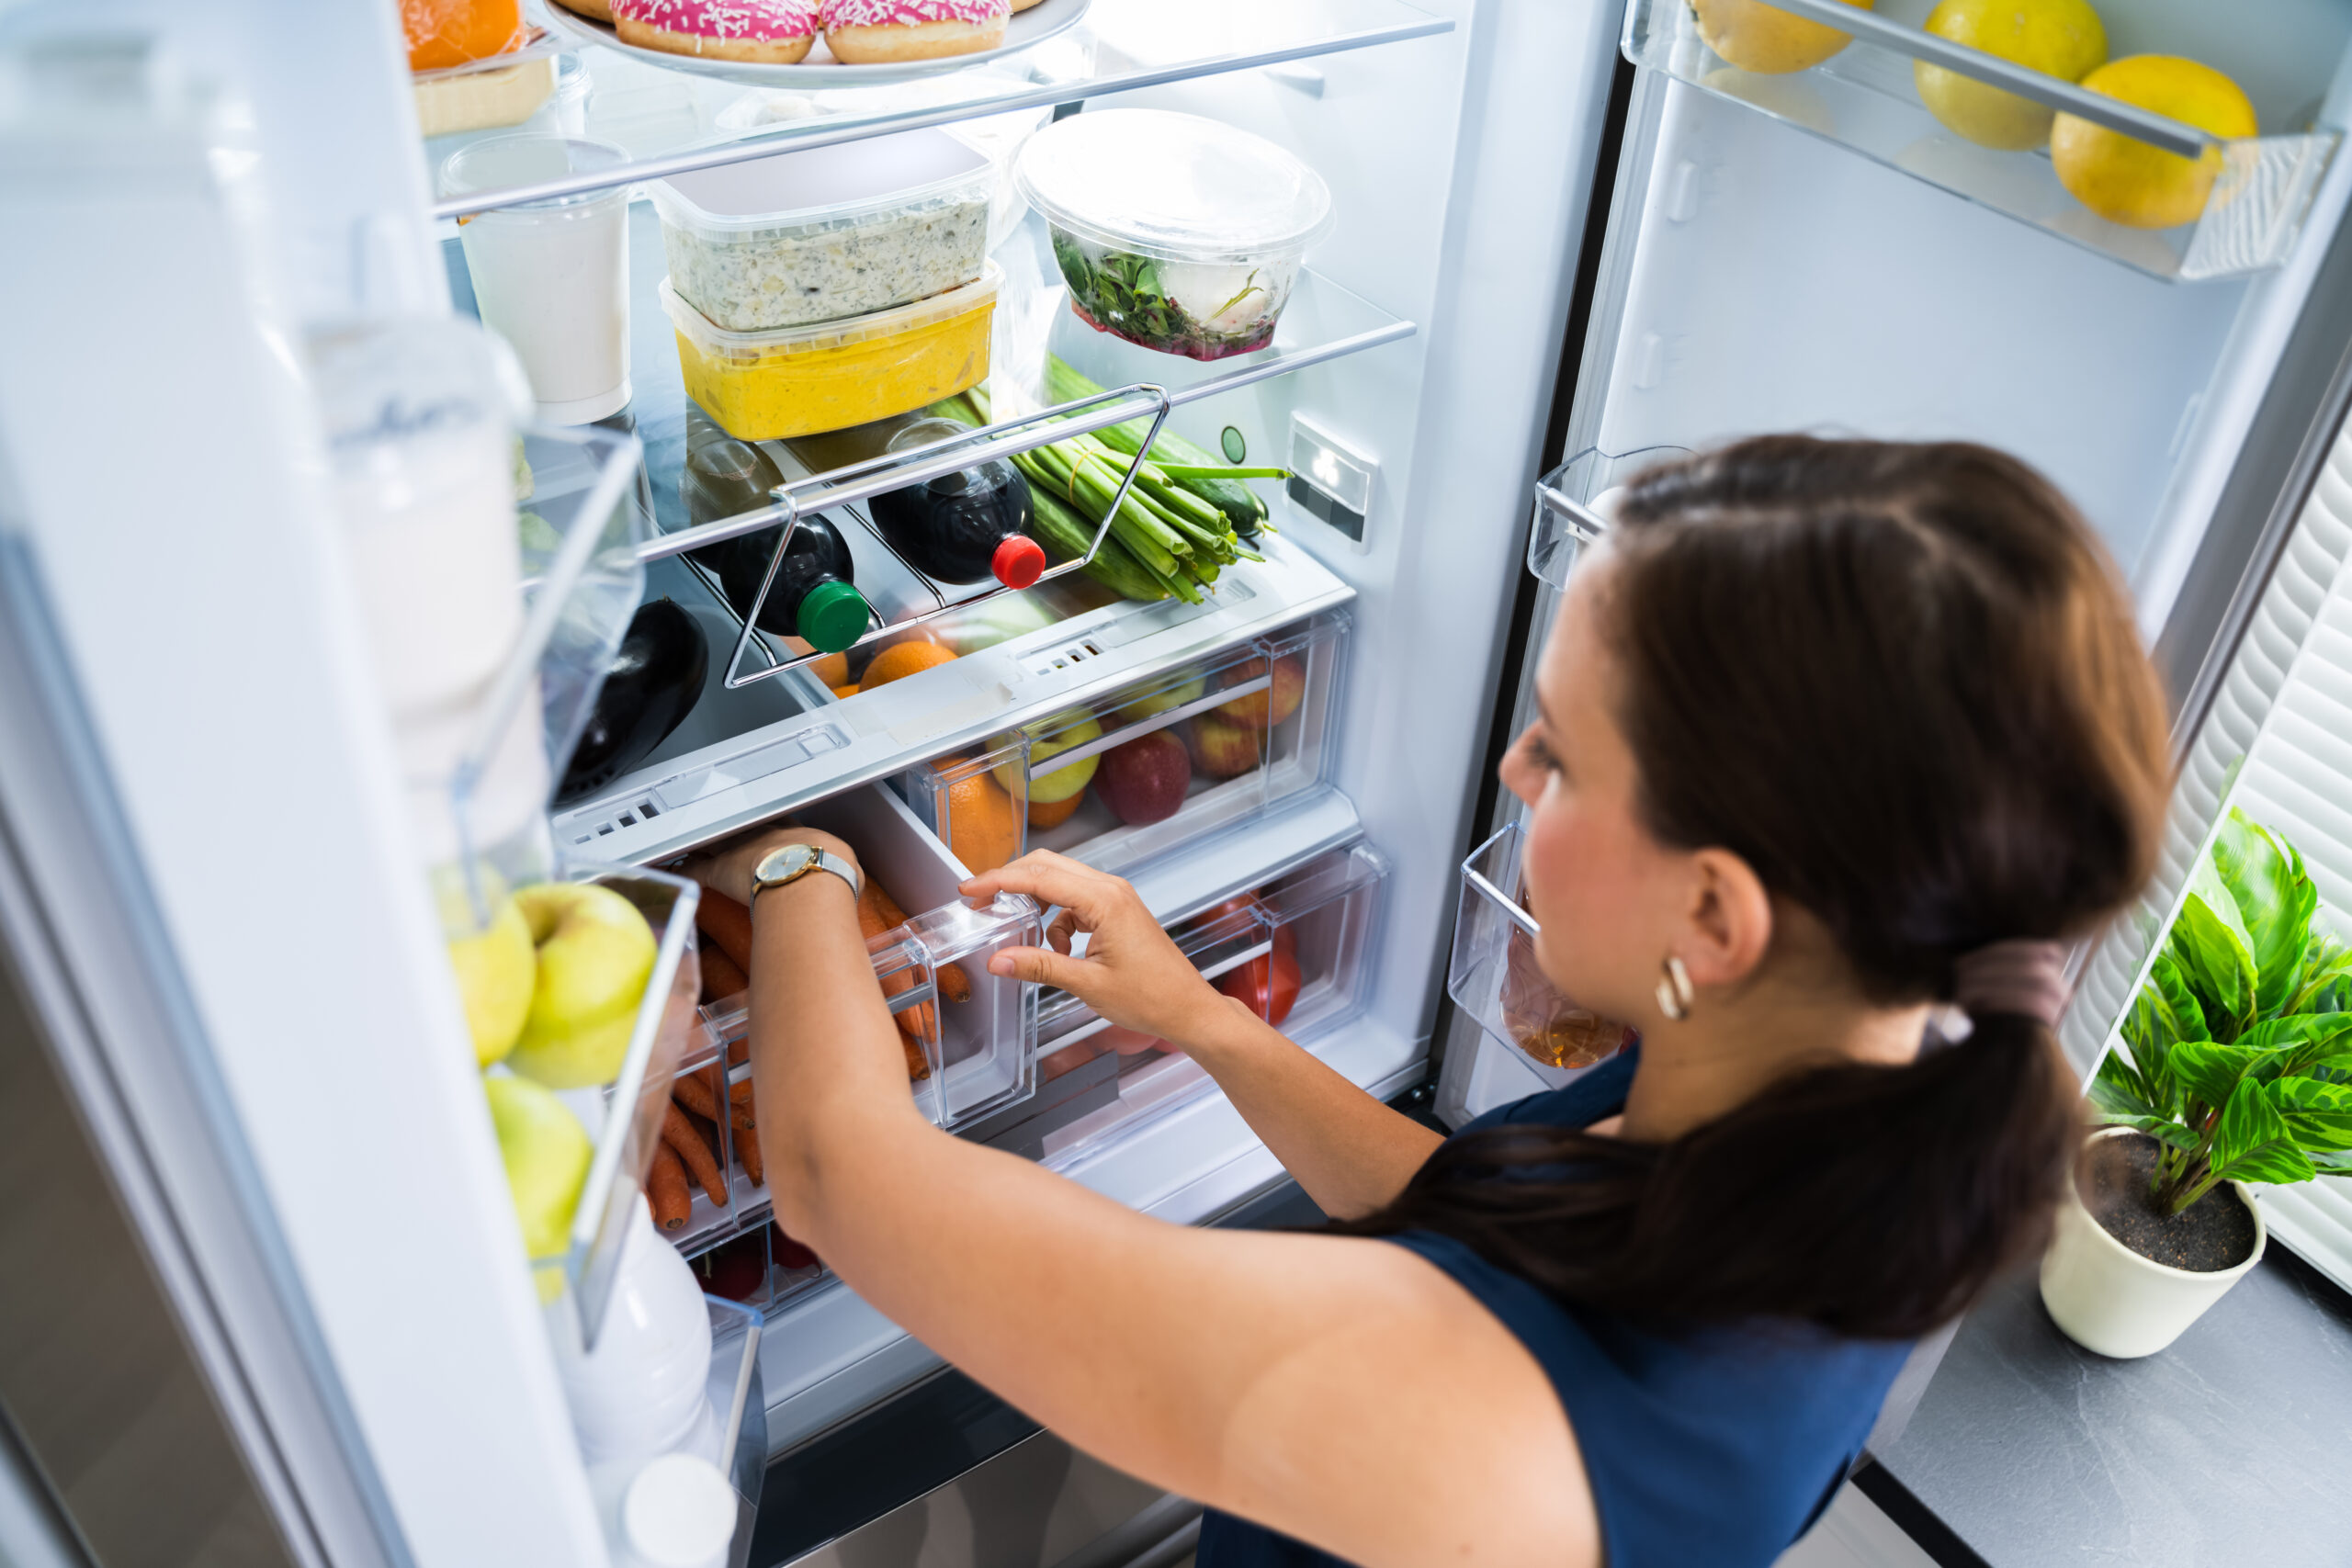 Сток холодильника. Холодильник с едой. Открытый холодильник с продуктами. [Jkjlbkmynbr c LTJQ'. Холодильник внутри.